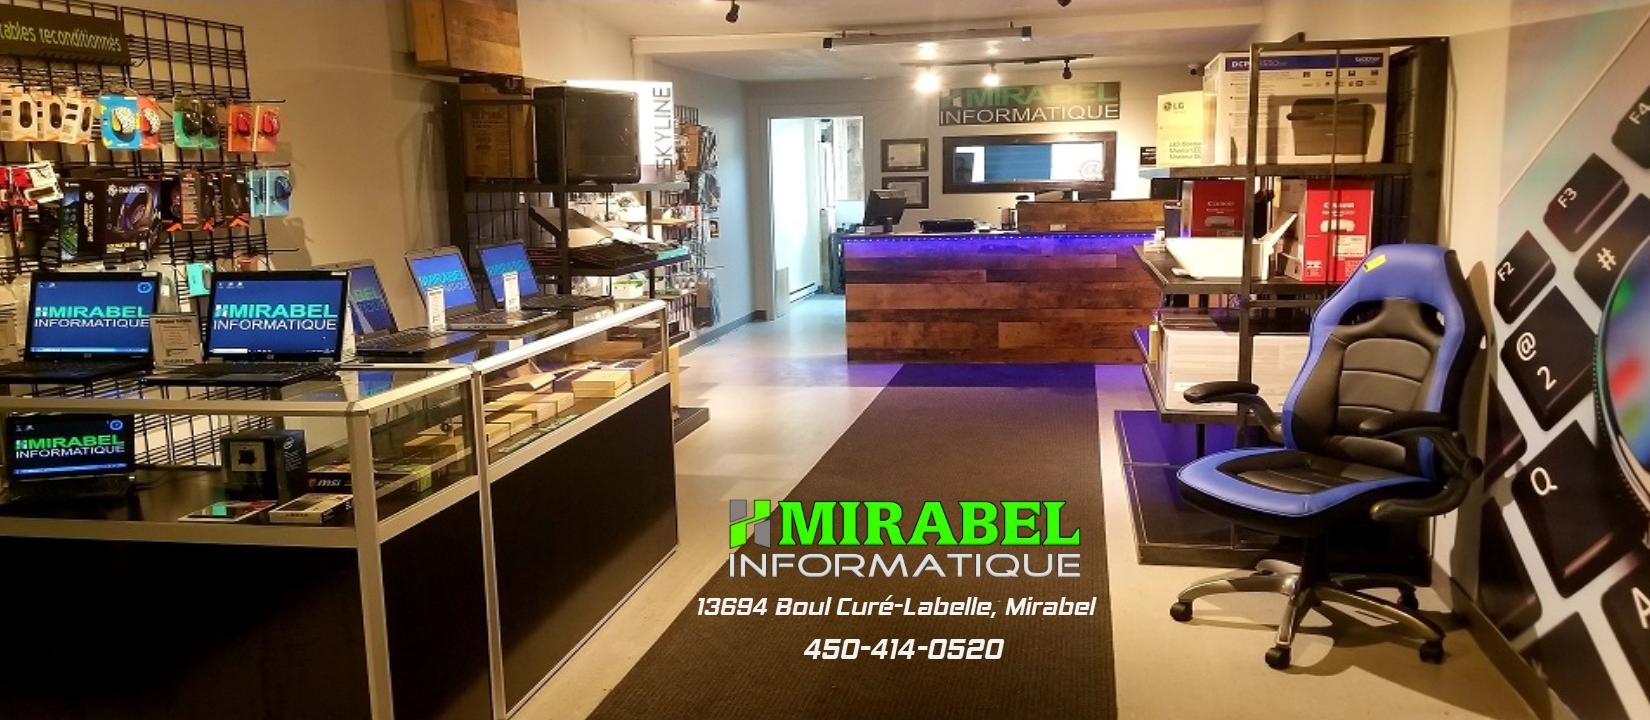 Mirabel Informatique - Service de Réparation D'ordinateur